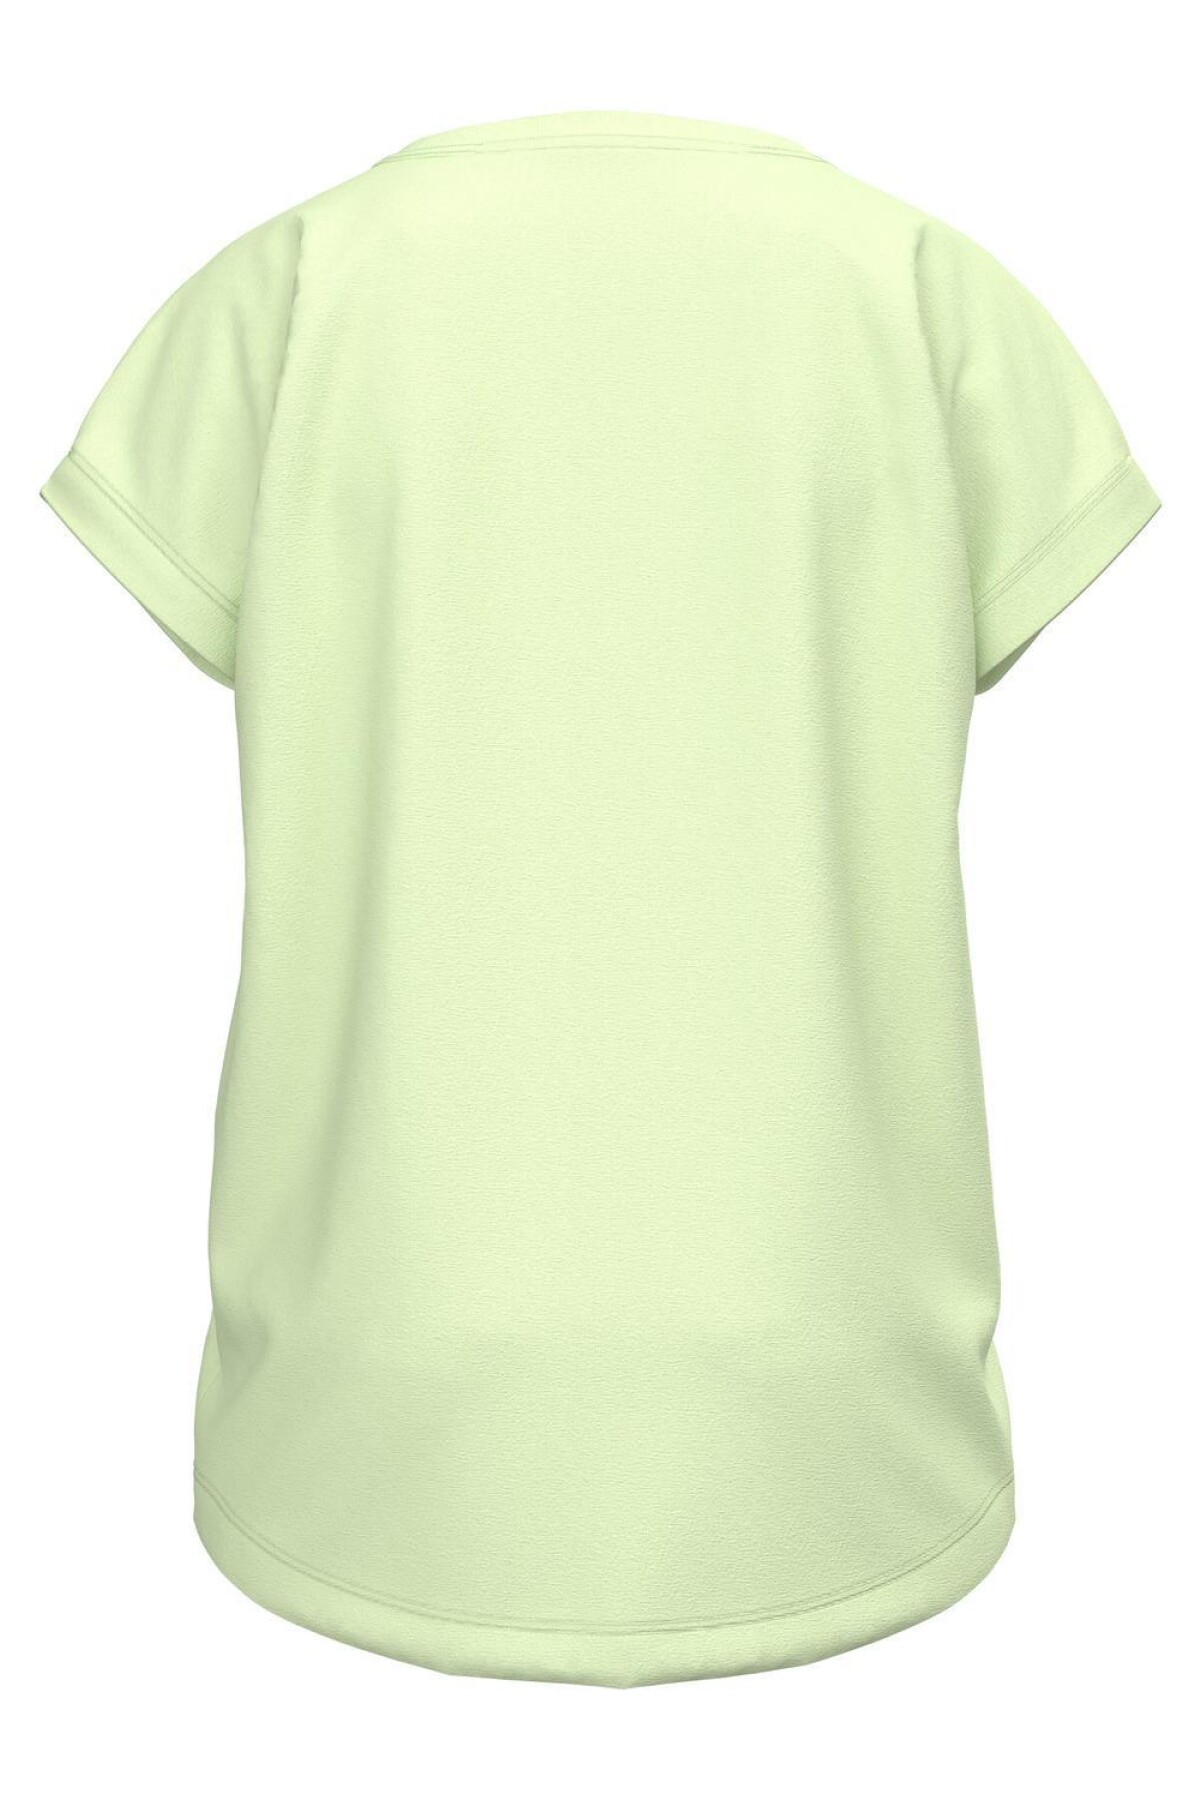 Camiseta Violet Lime Cream